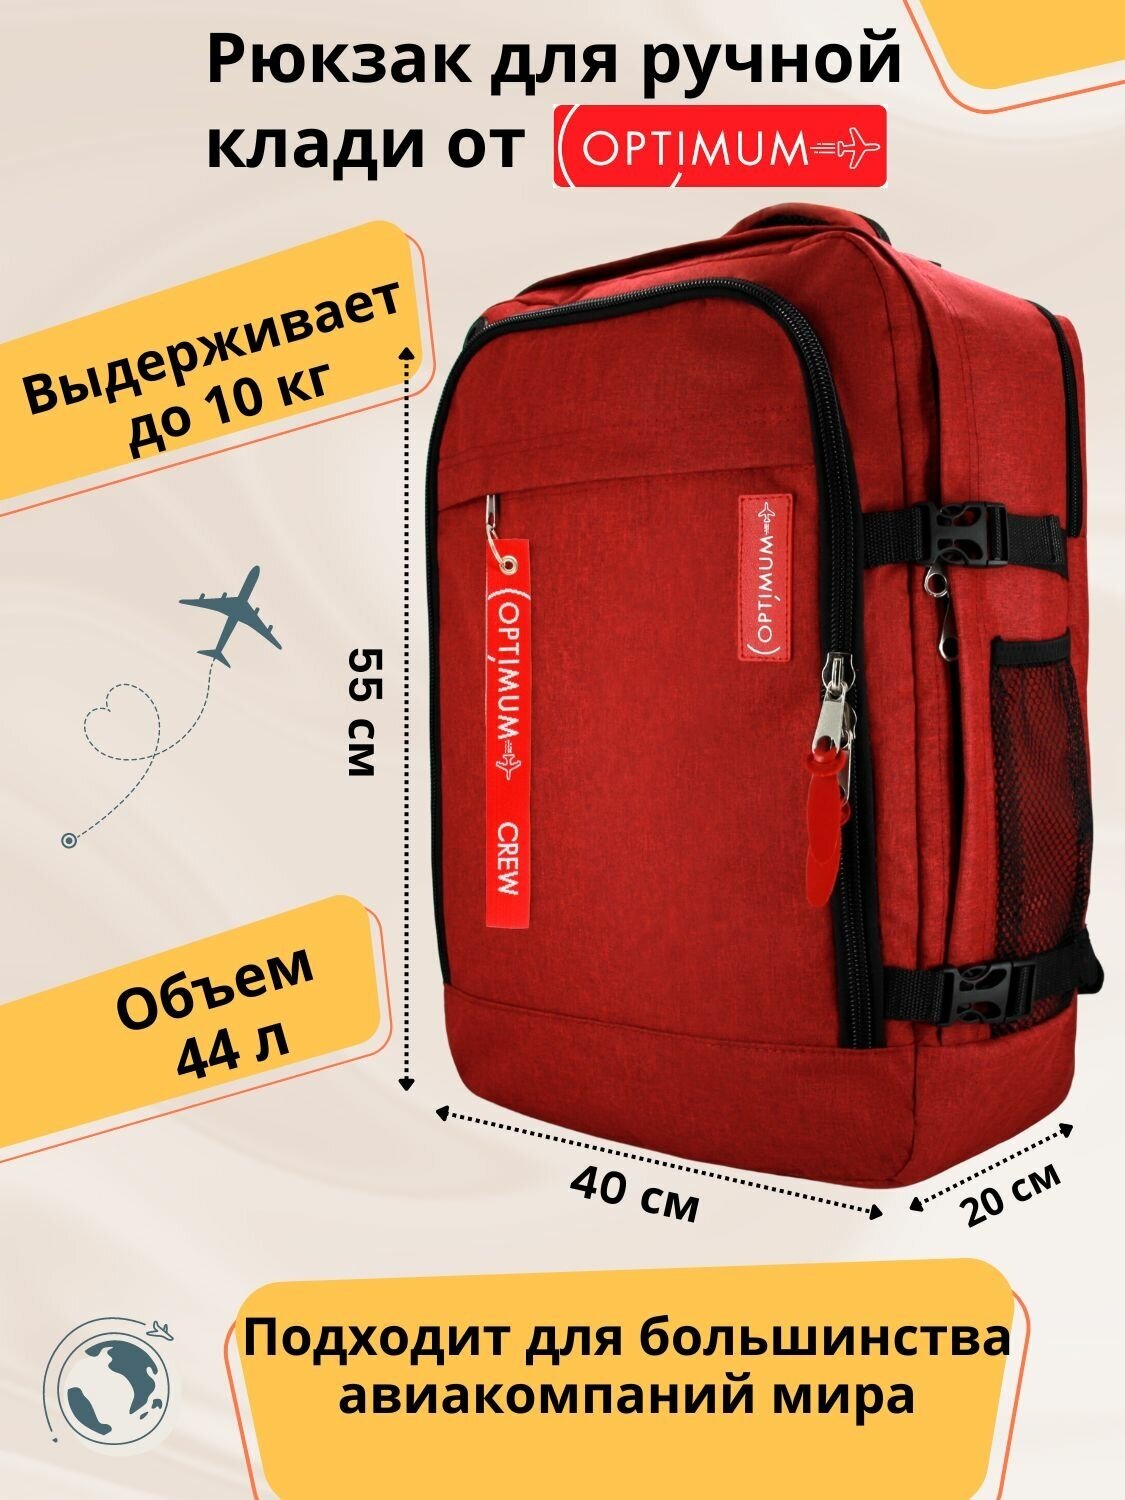 Рюкзак для путешествий дорожный ручная кладь 55х40х20 в самолет 44 л, красный